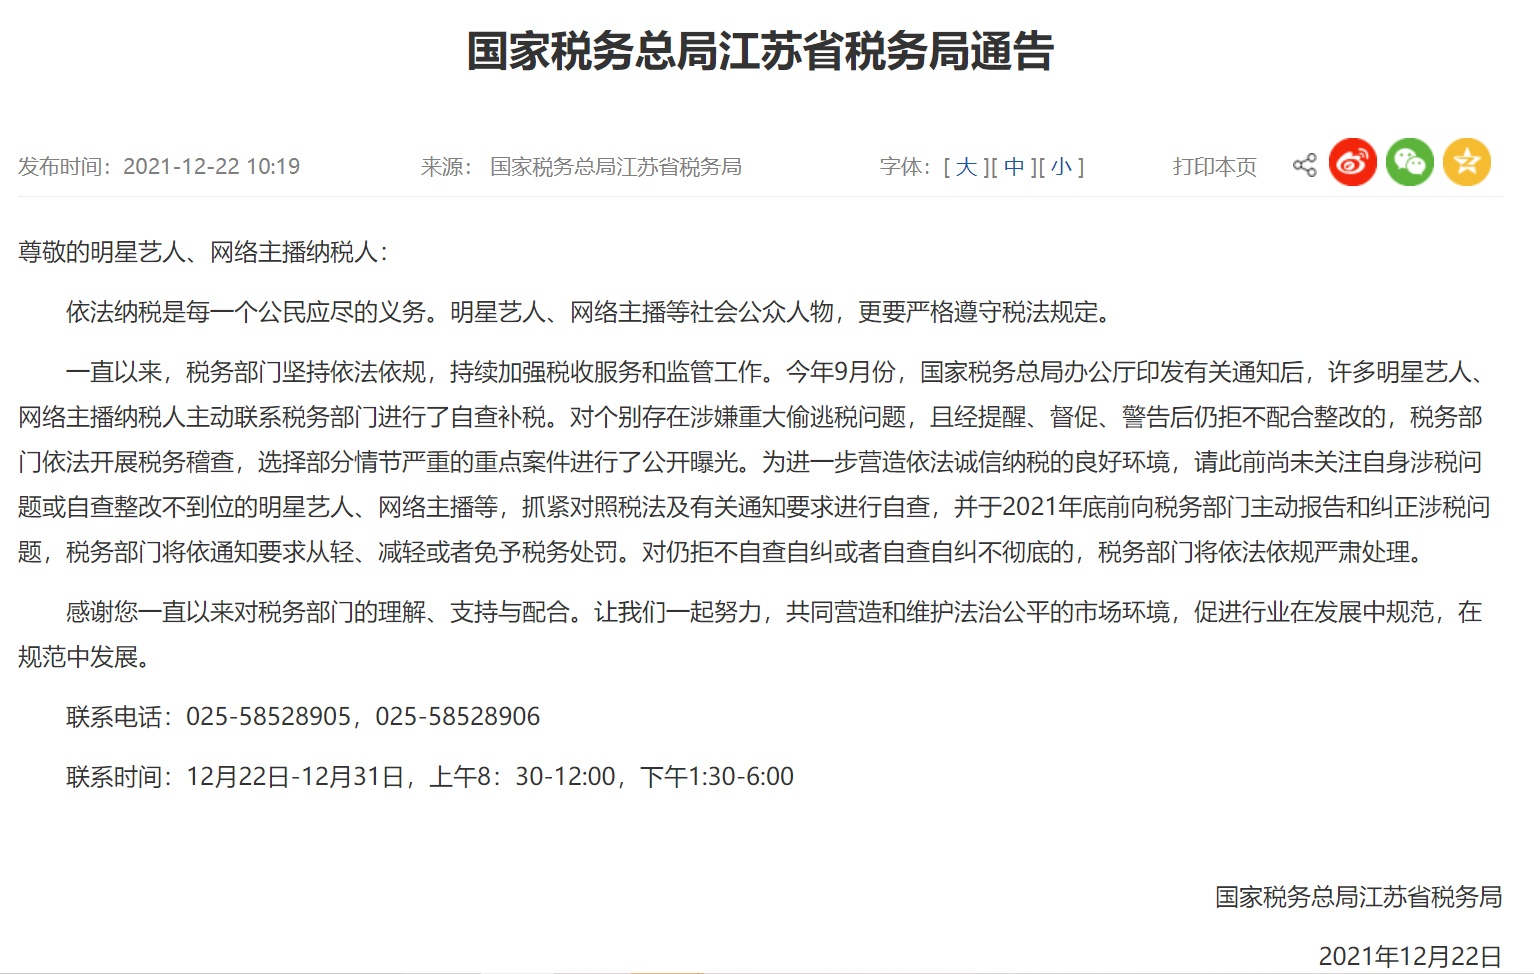 北京、江苏等多地要求艺人主播年底前纠正涉税问题